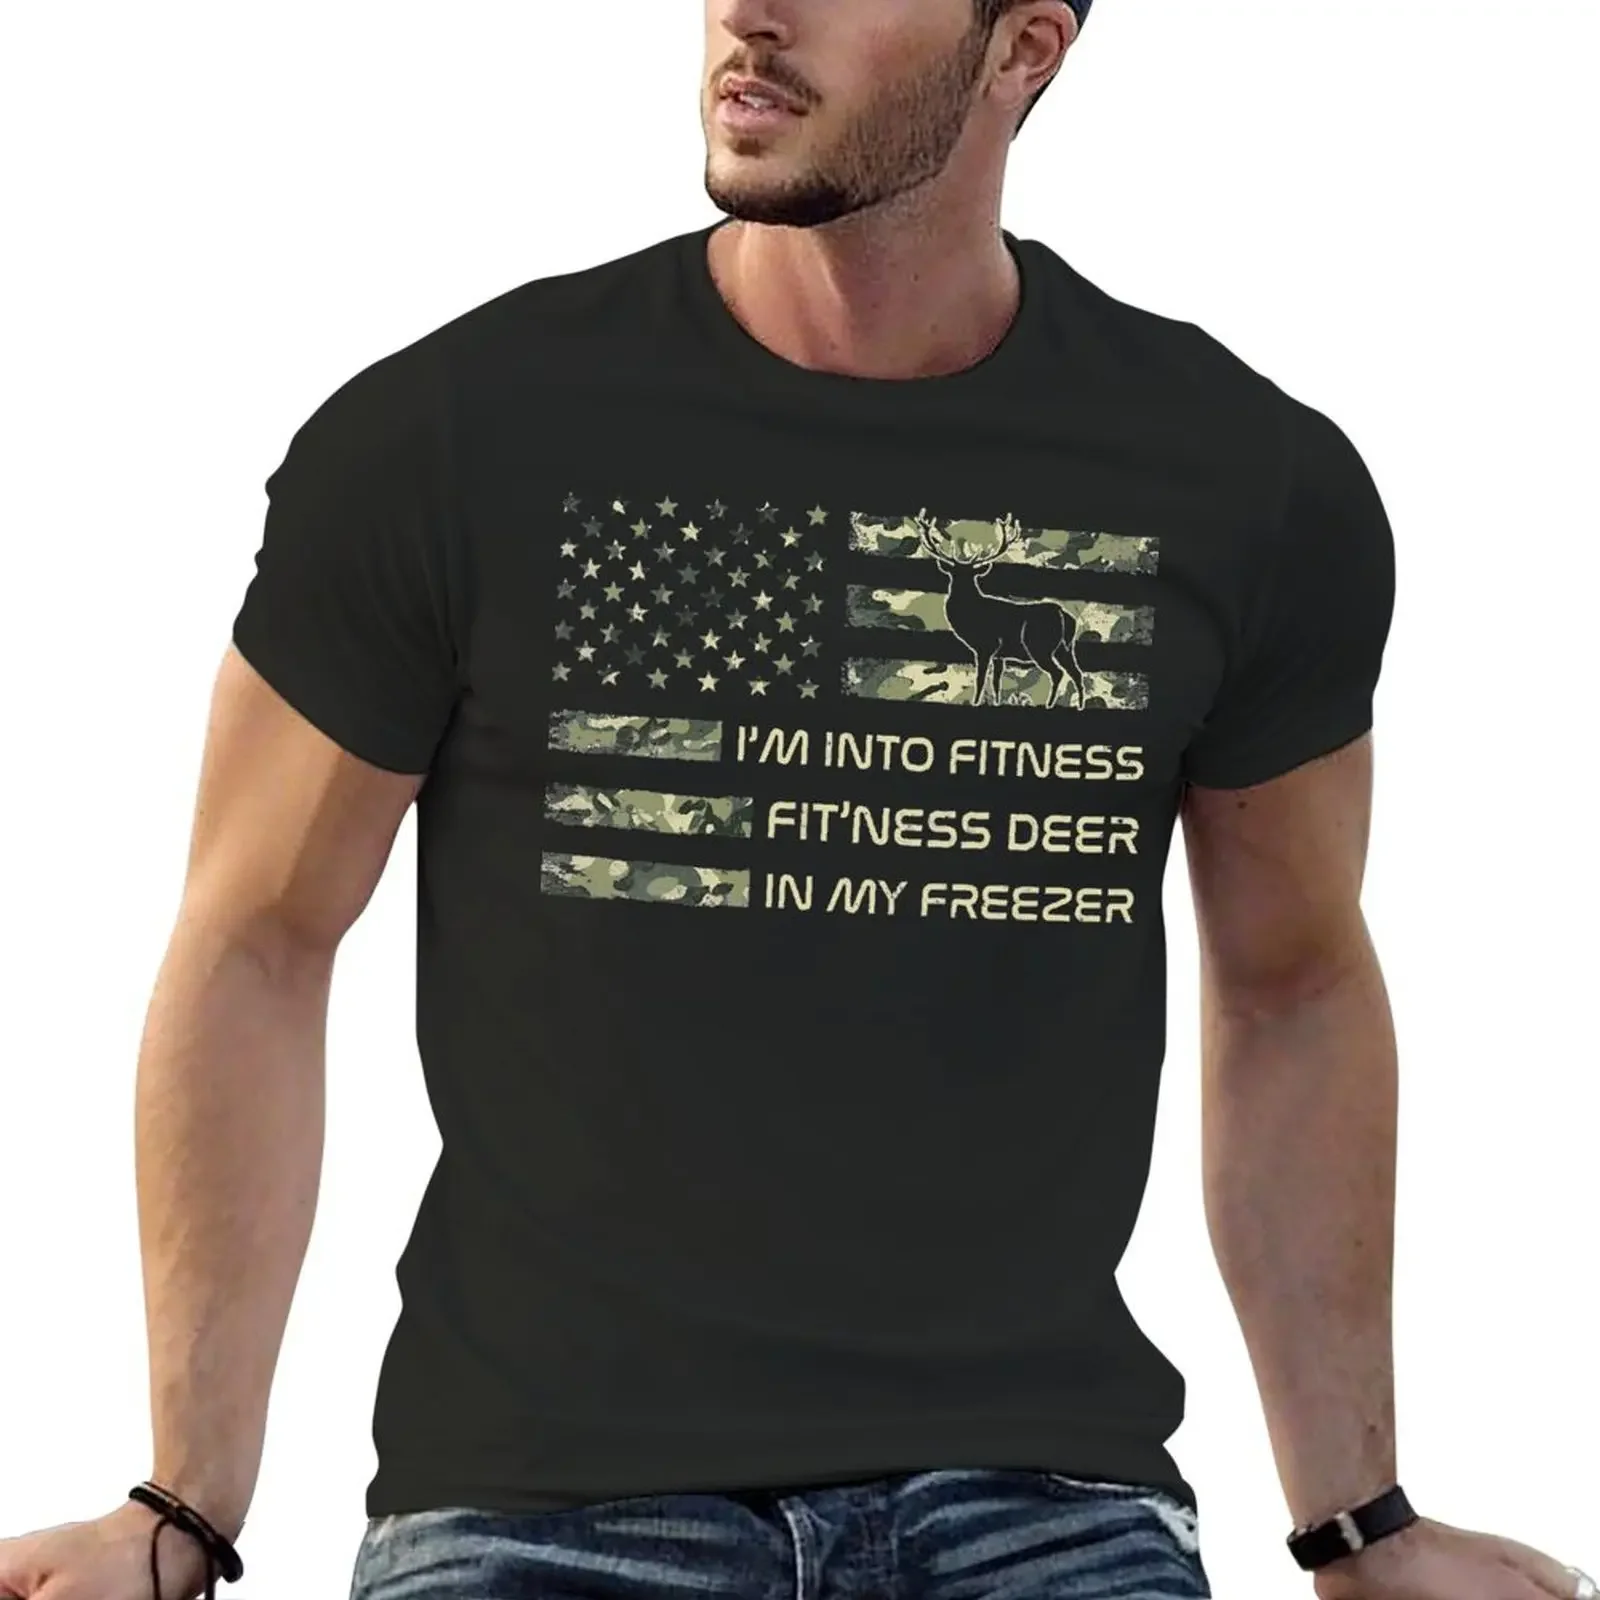 

Футболка с надписью «I'm Into Fitness Fit'ness Deer In My морозильная камера», мужская и женская футболка, винтажный летний топ, черные футболки для мужчин под заказ